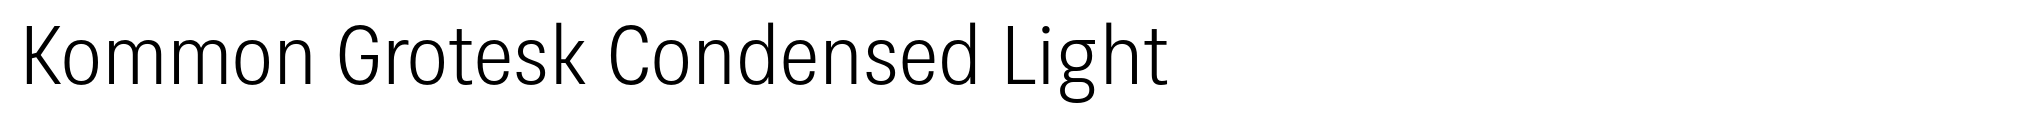 Kommon Grotesk Condensed Light image